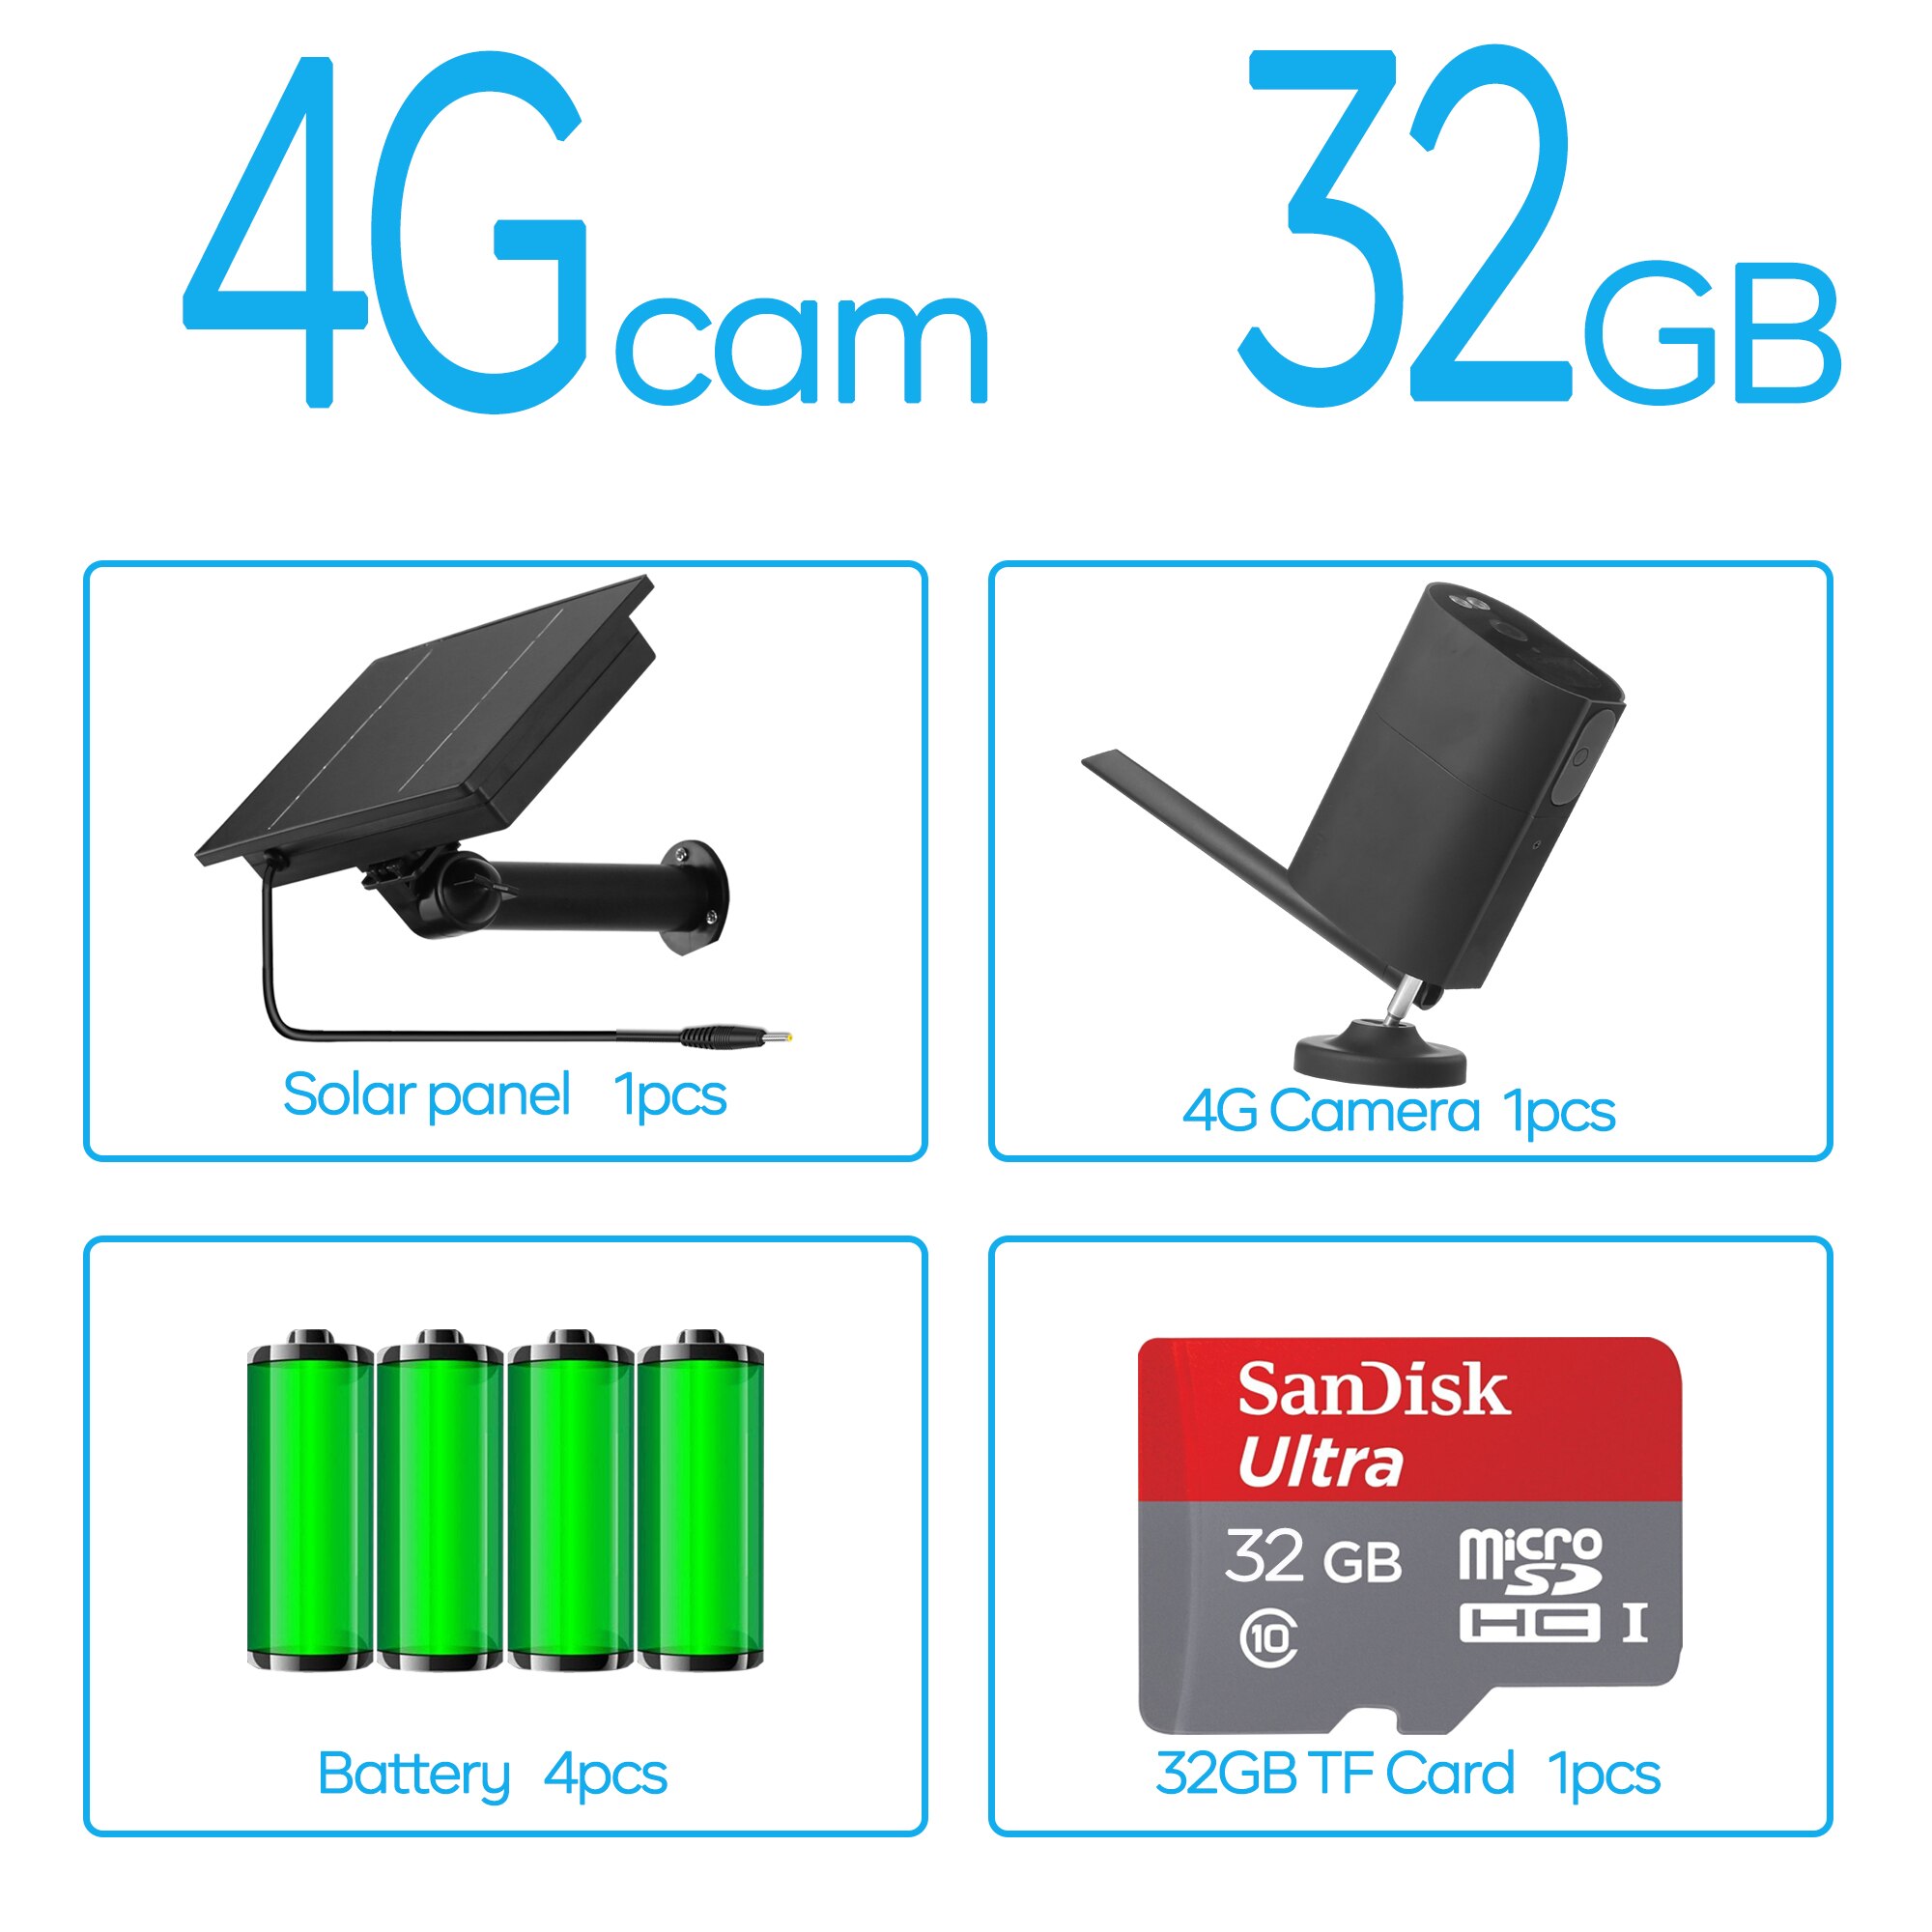 4G Cam / 32GB